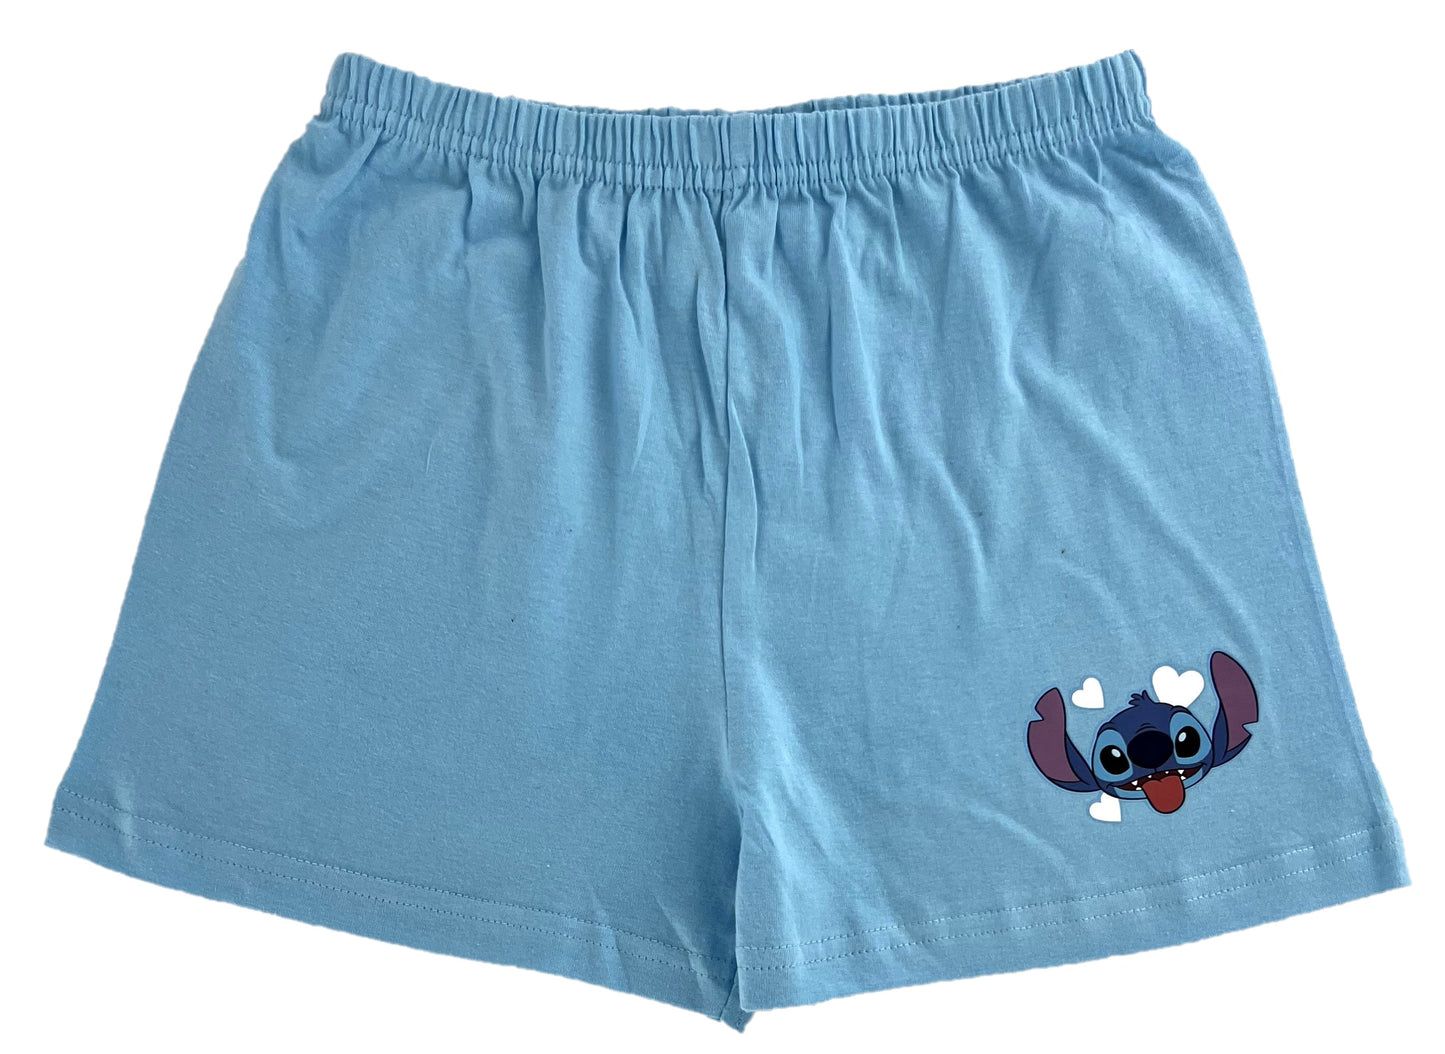 Disney Lilo & Stitch Girl’s Shortie Pyjamas 5-12 Years,